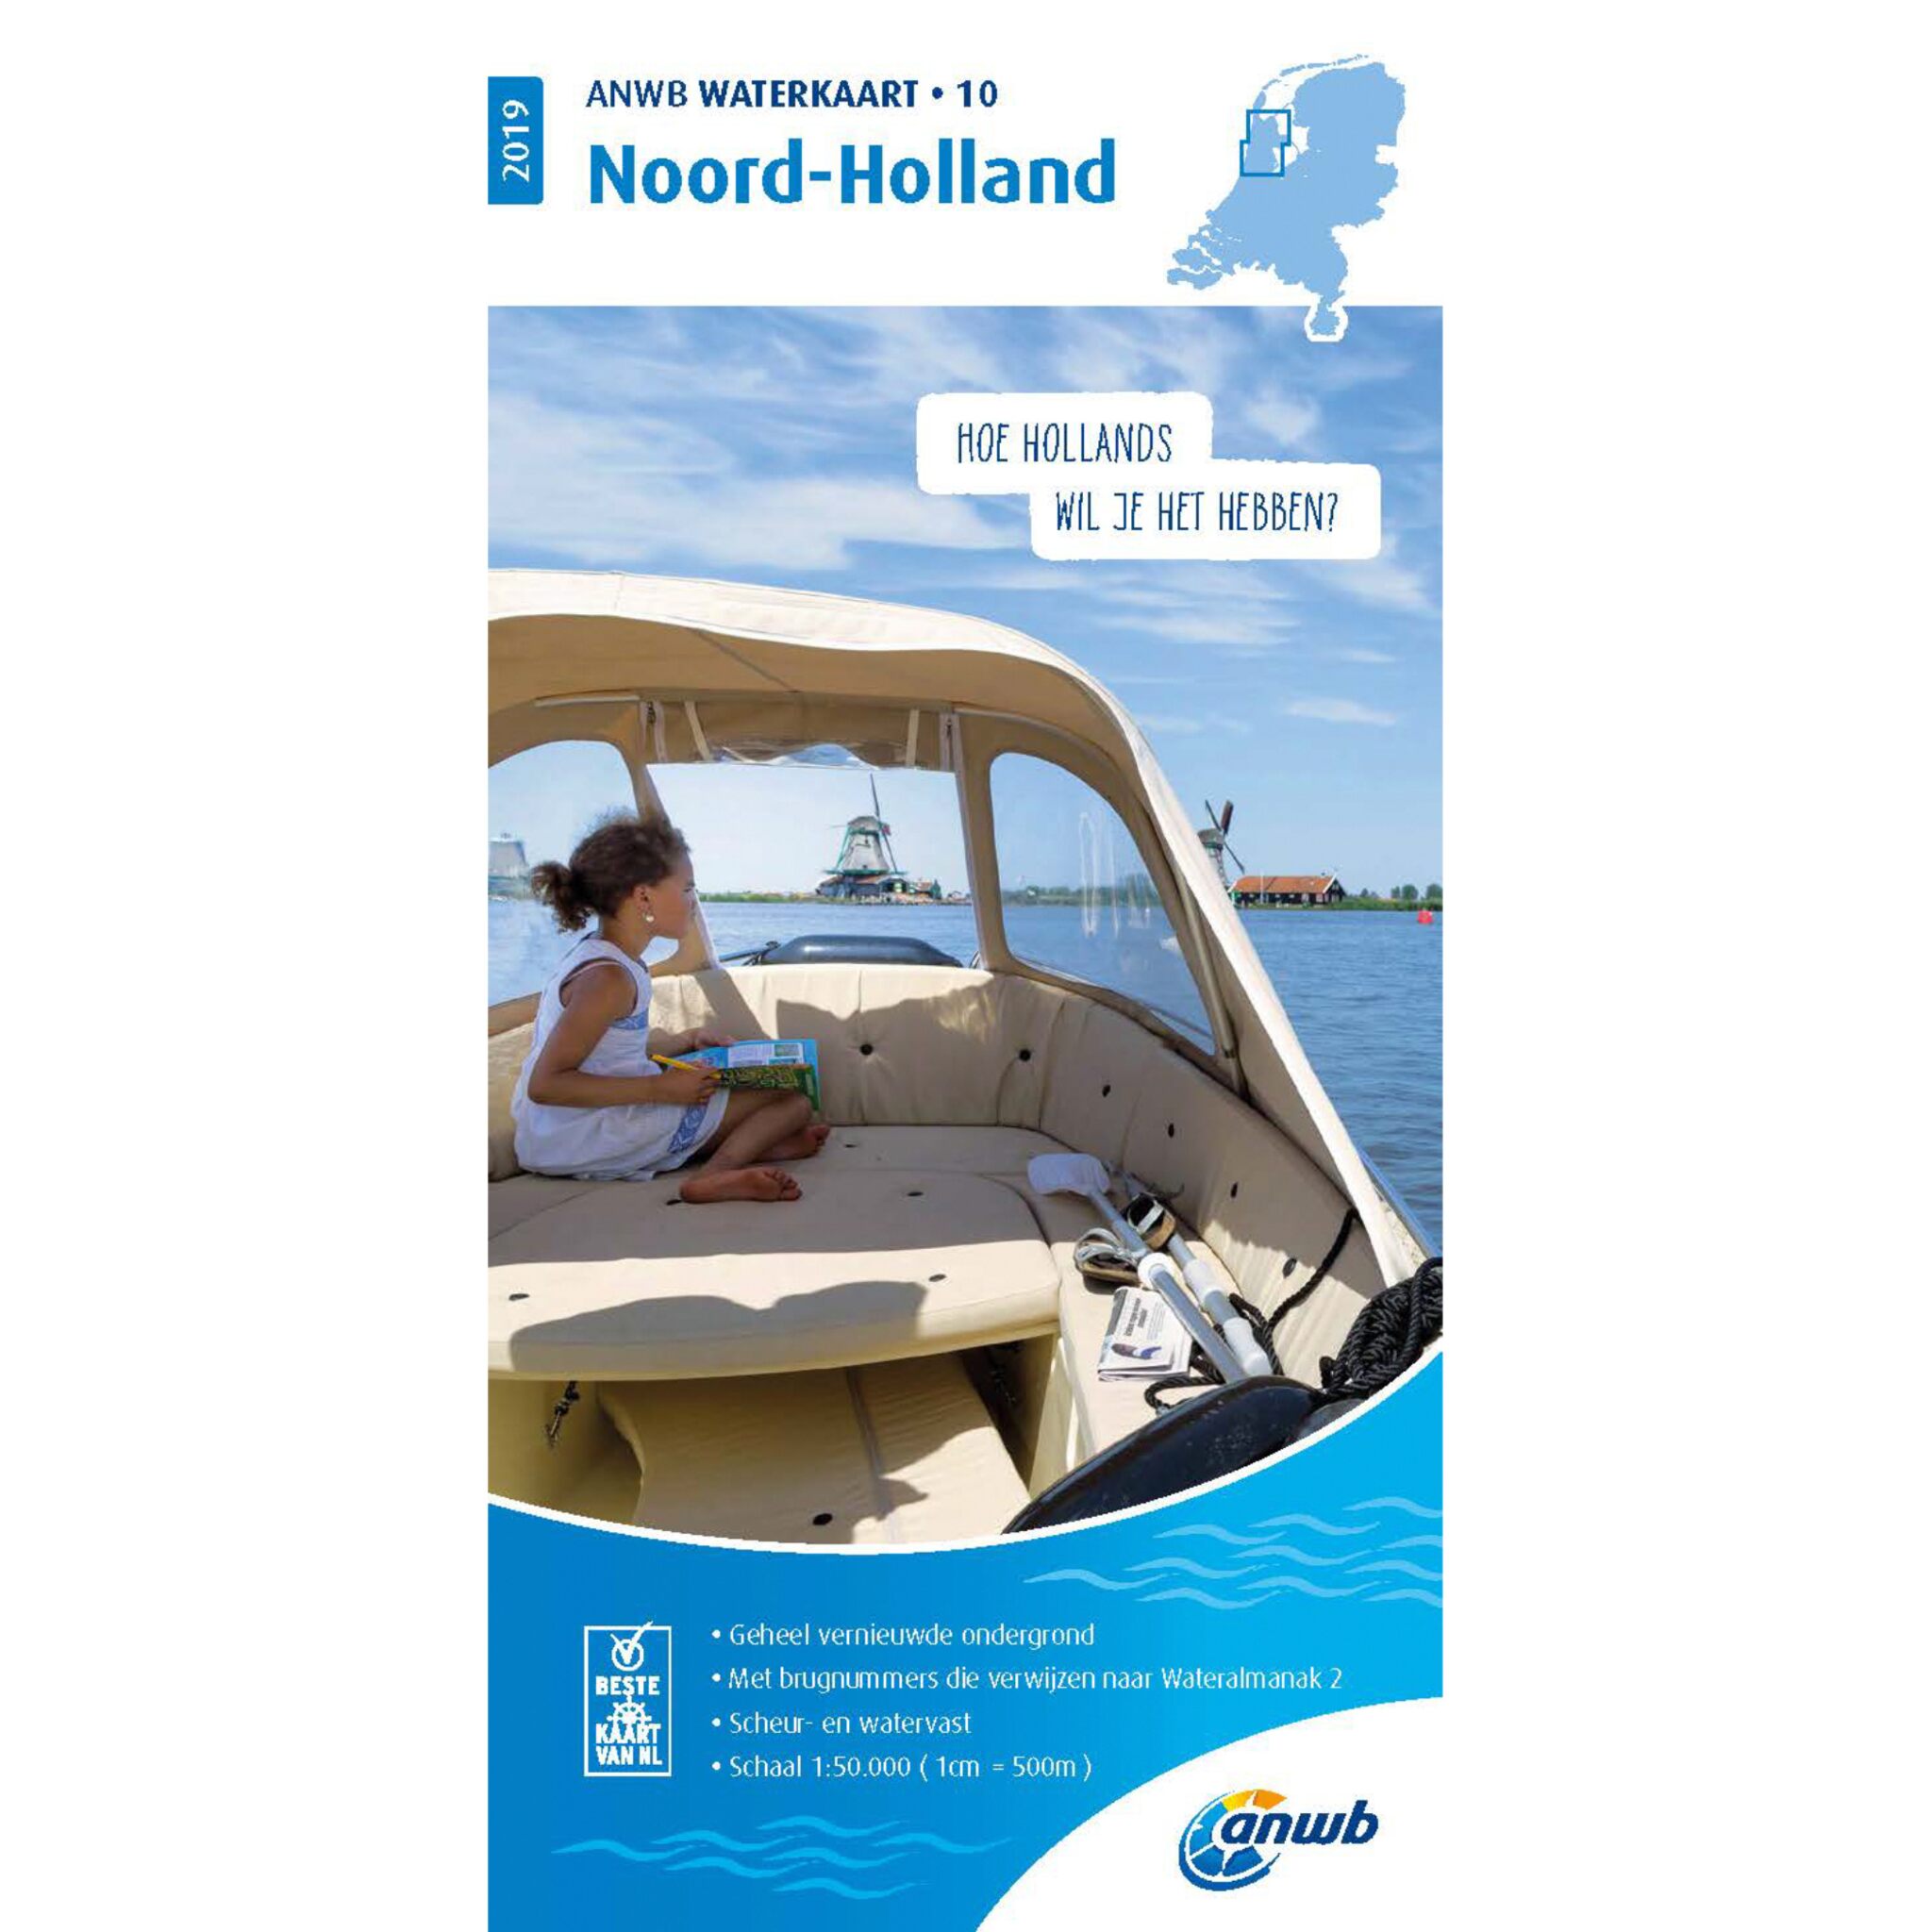 ANWB Waterkaart 10 Noord-Holland 2019